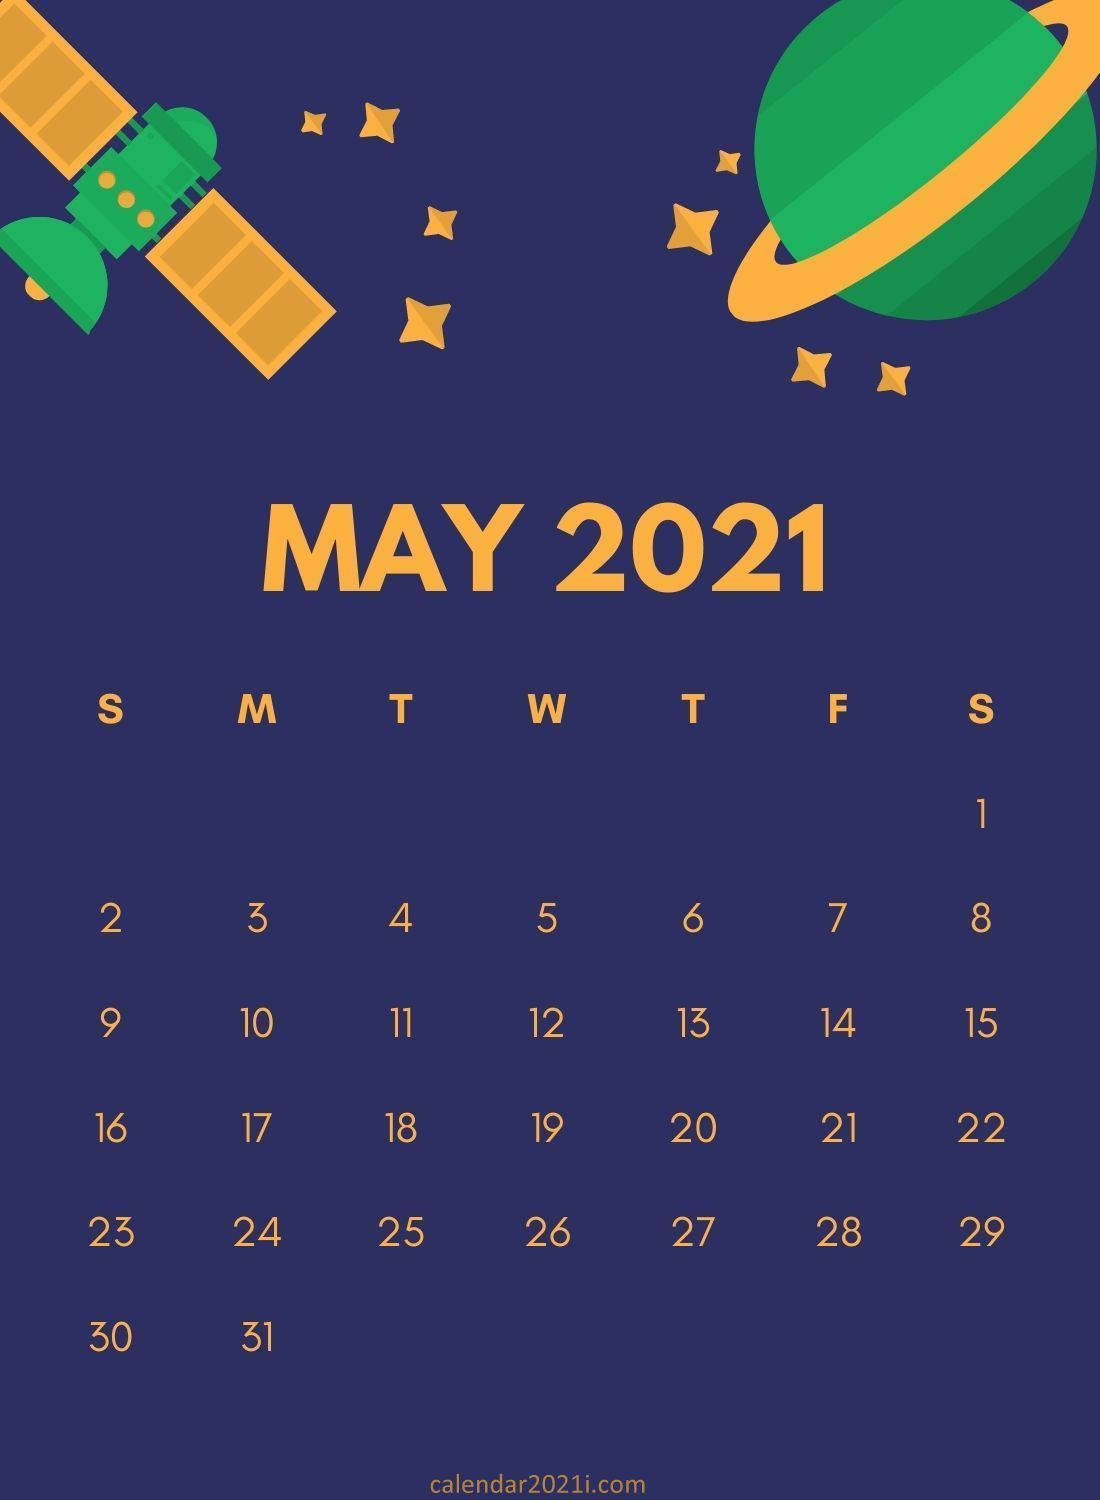 Cute Space Art May 2021 Calendar